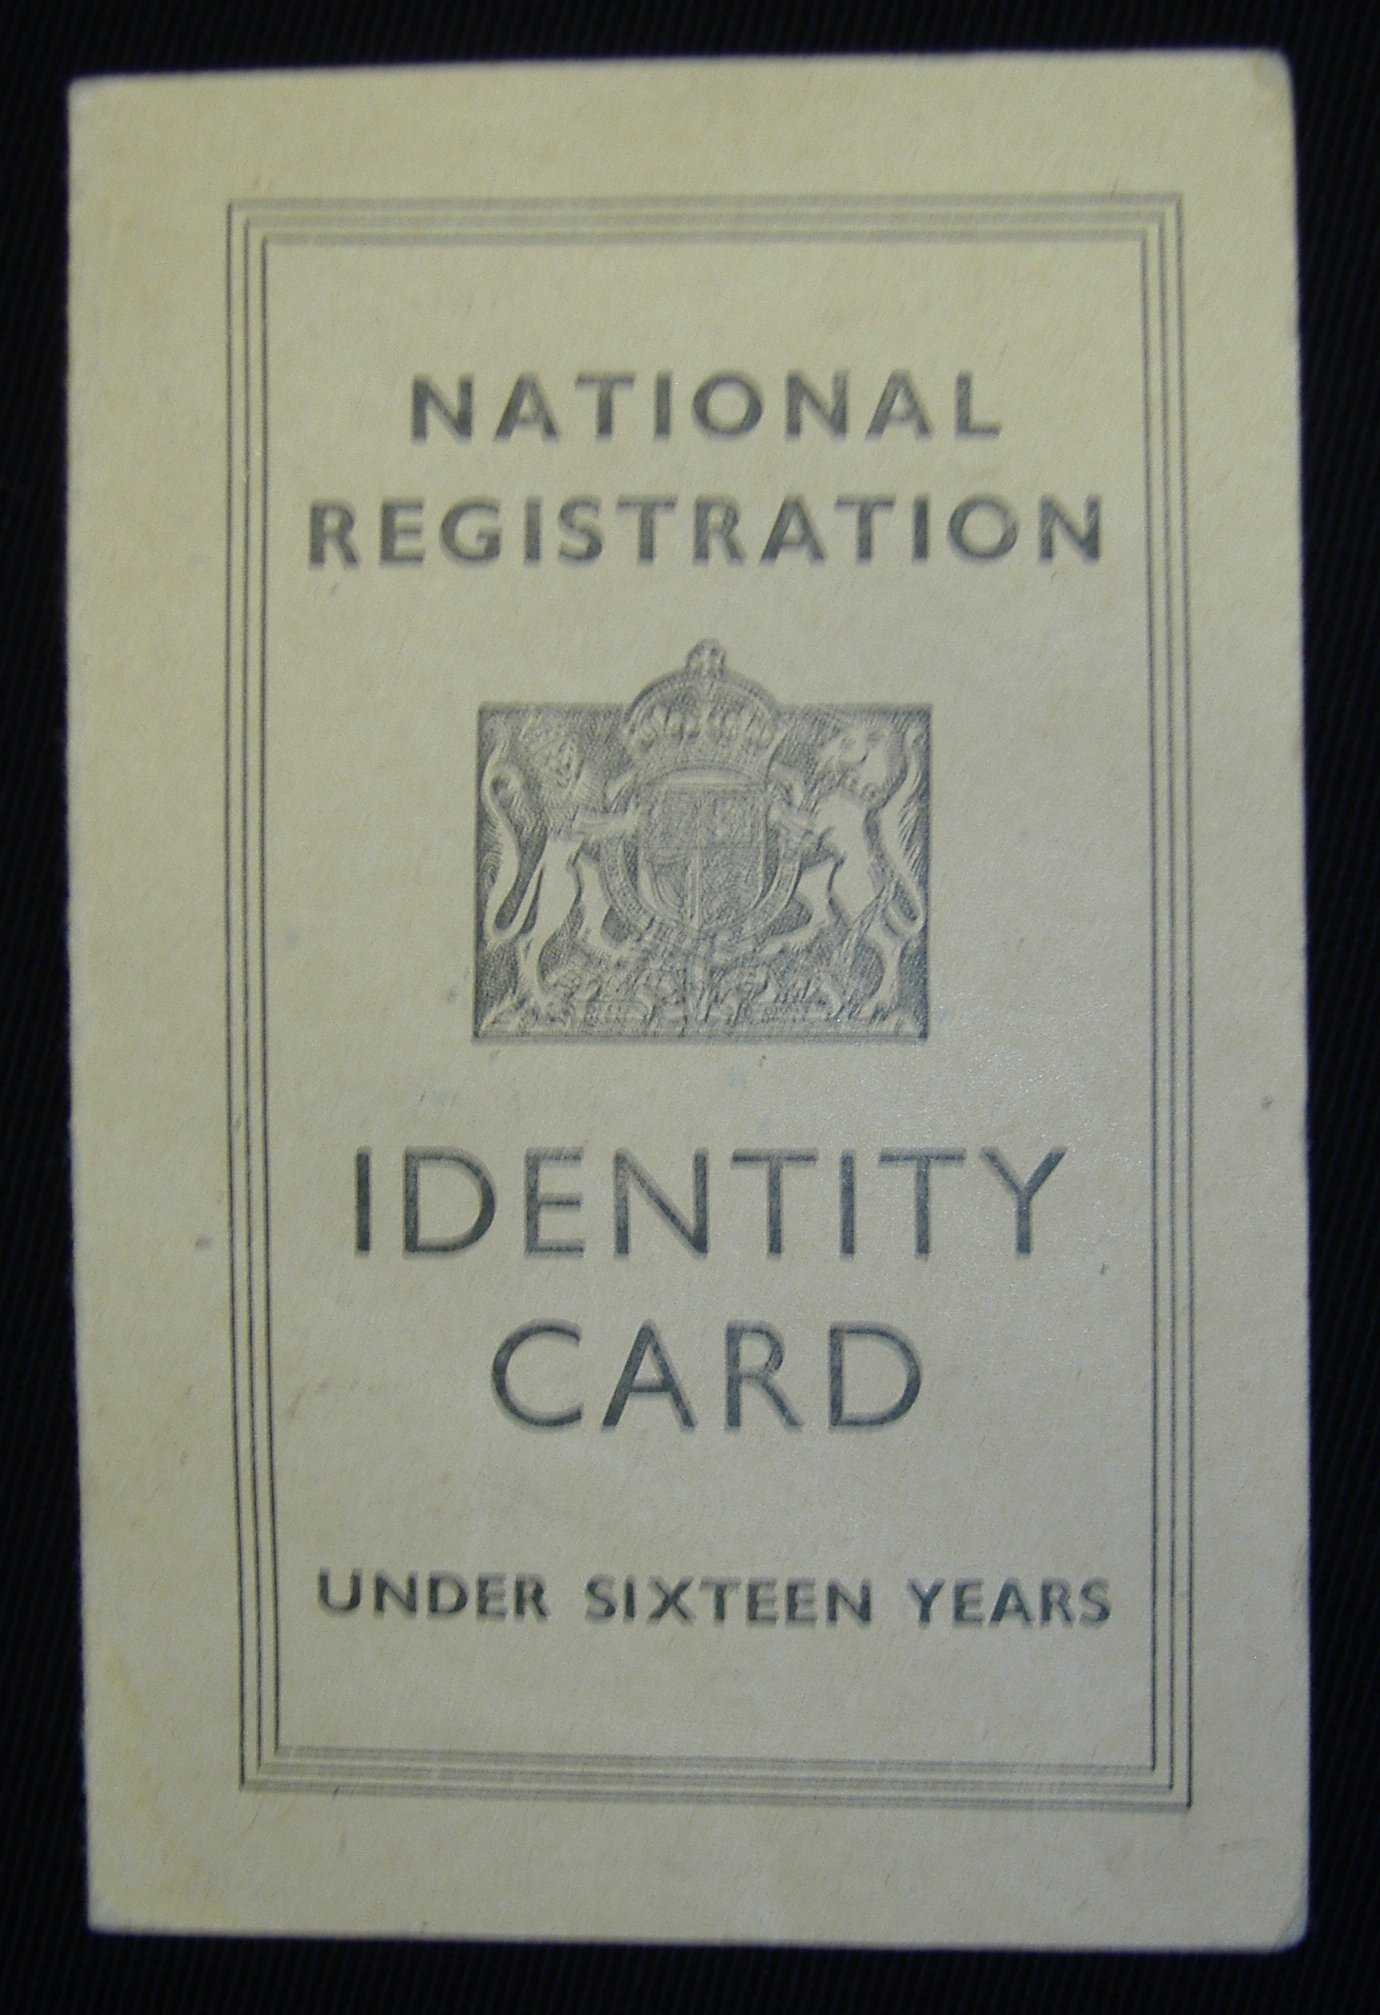 World War 2 Identity Card Template – Atlantaauctionco For World War 2 Identity Card Template